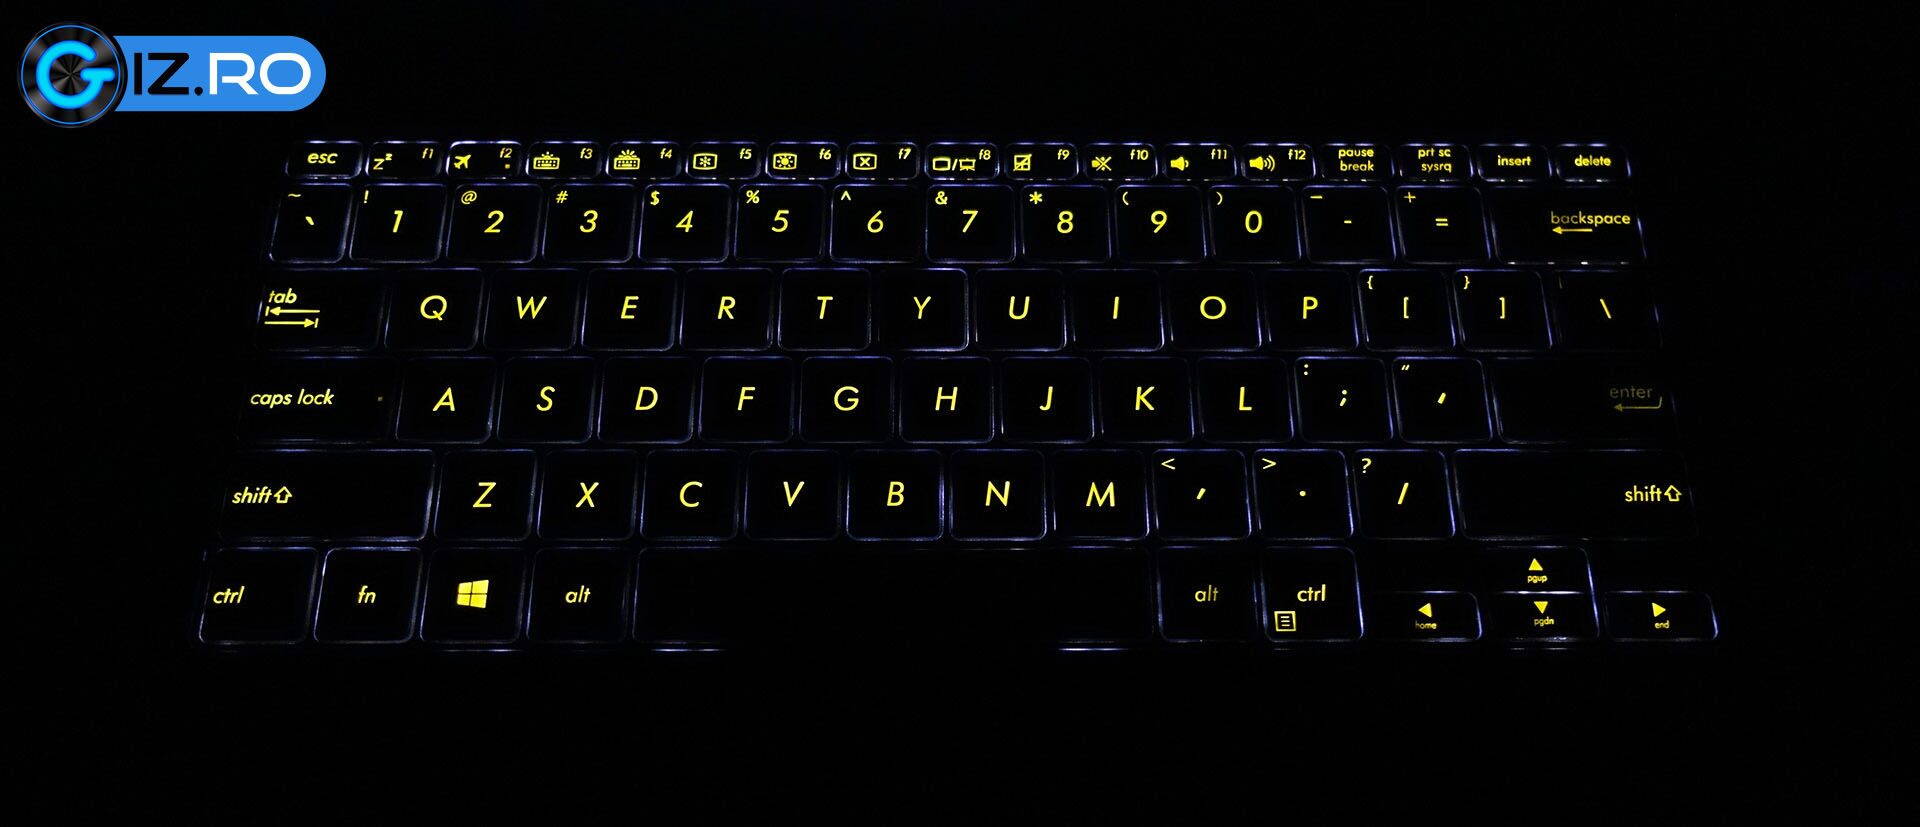 asus-zenbook-ux370ua-keyboard-backlit